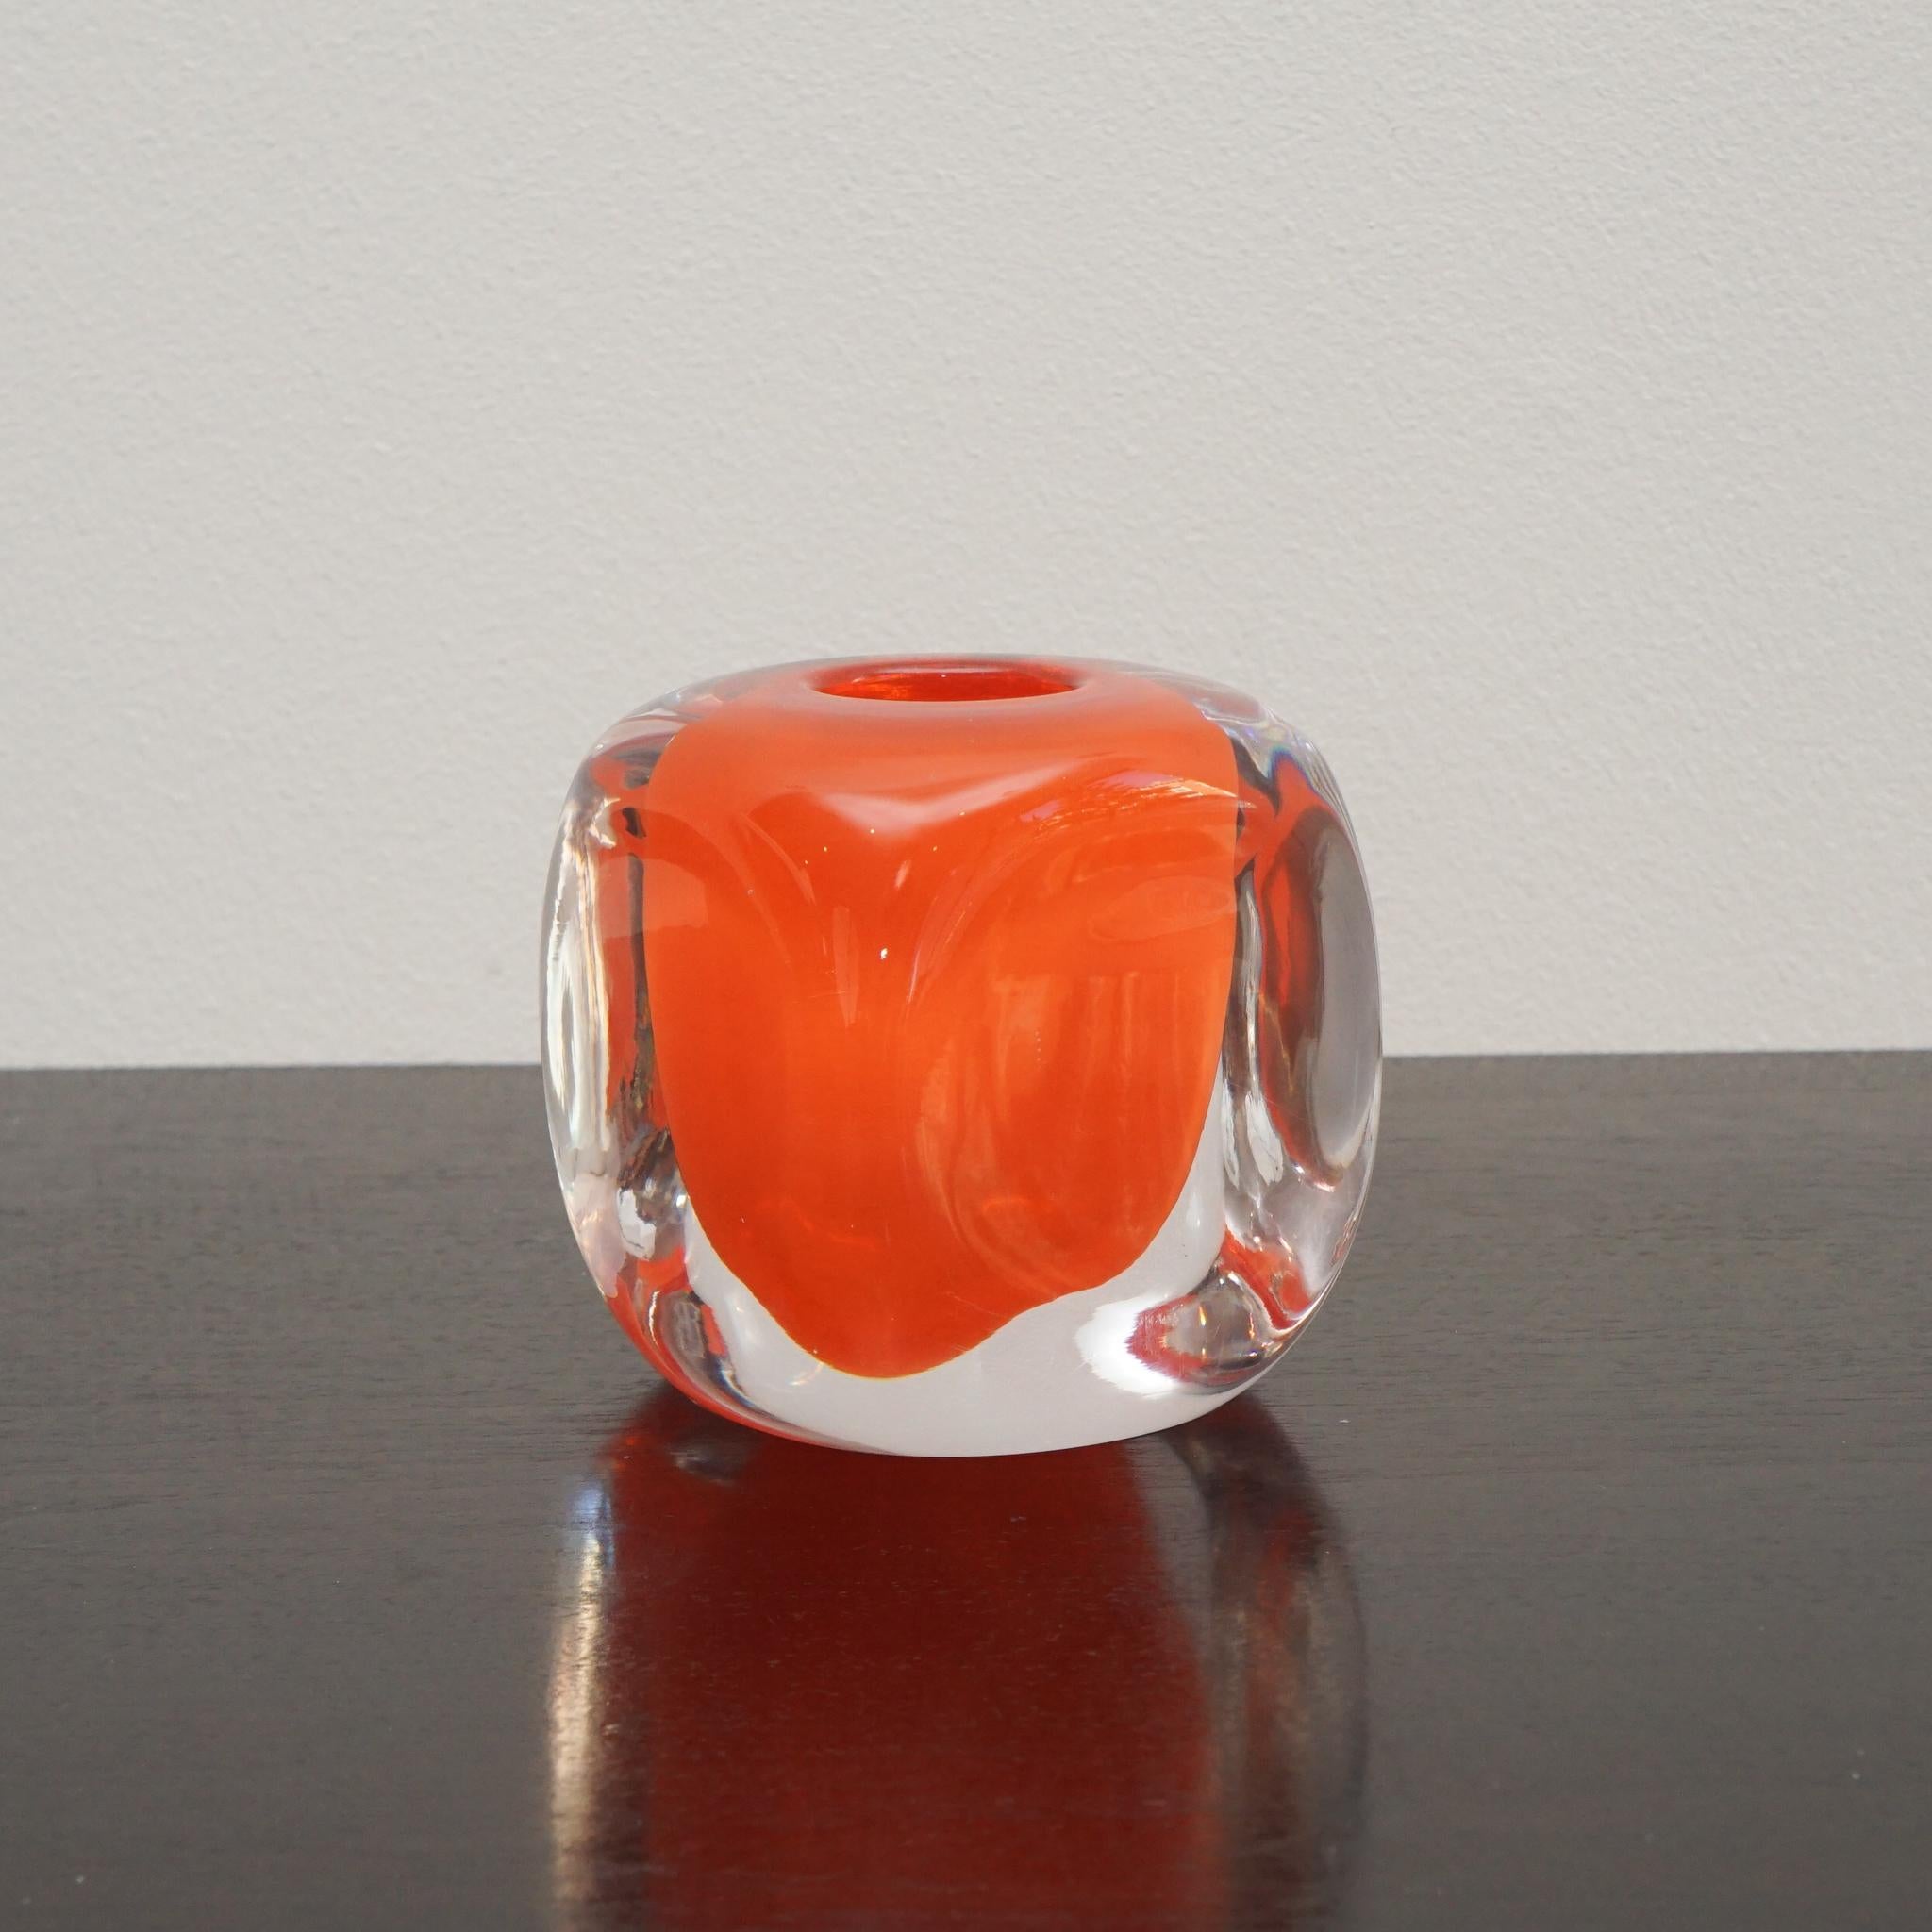 Der belgische Glasmacher Henry Dean stellt seit dreißig Jahren handgefertigte, mundgeblasene Glasgefäße her.  Der hier gezeigte Tournon-Kerzenhalter aus orangefarbenem Klarglas zeigt die Kunstfertigkeit, für die das Unternehmen bekannt ist.  